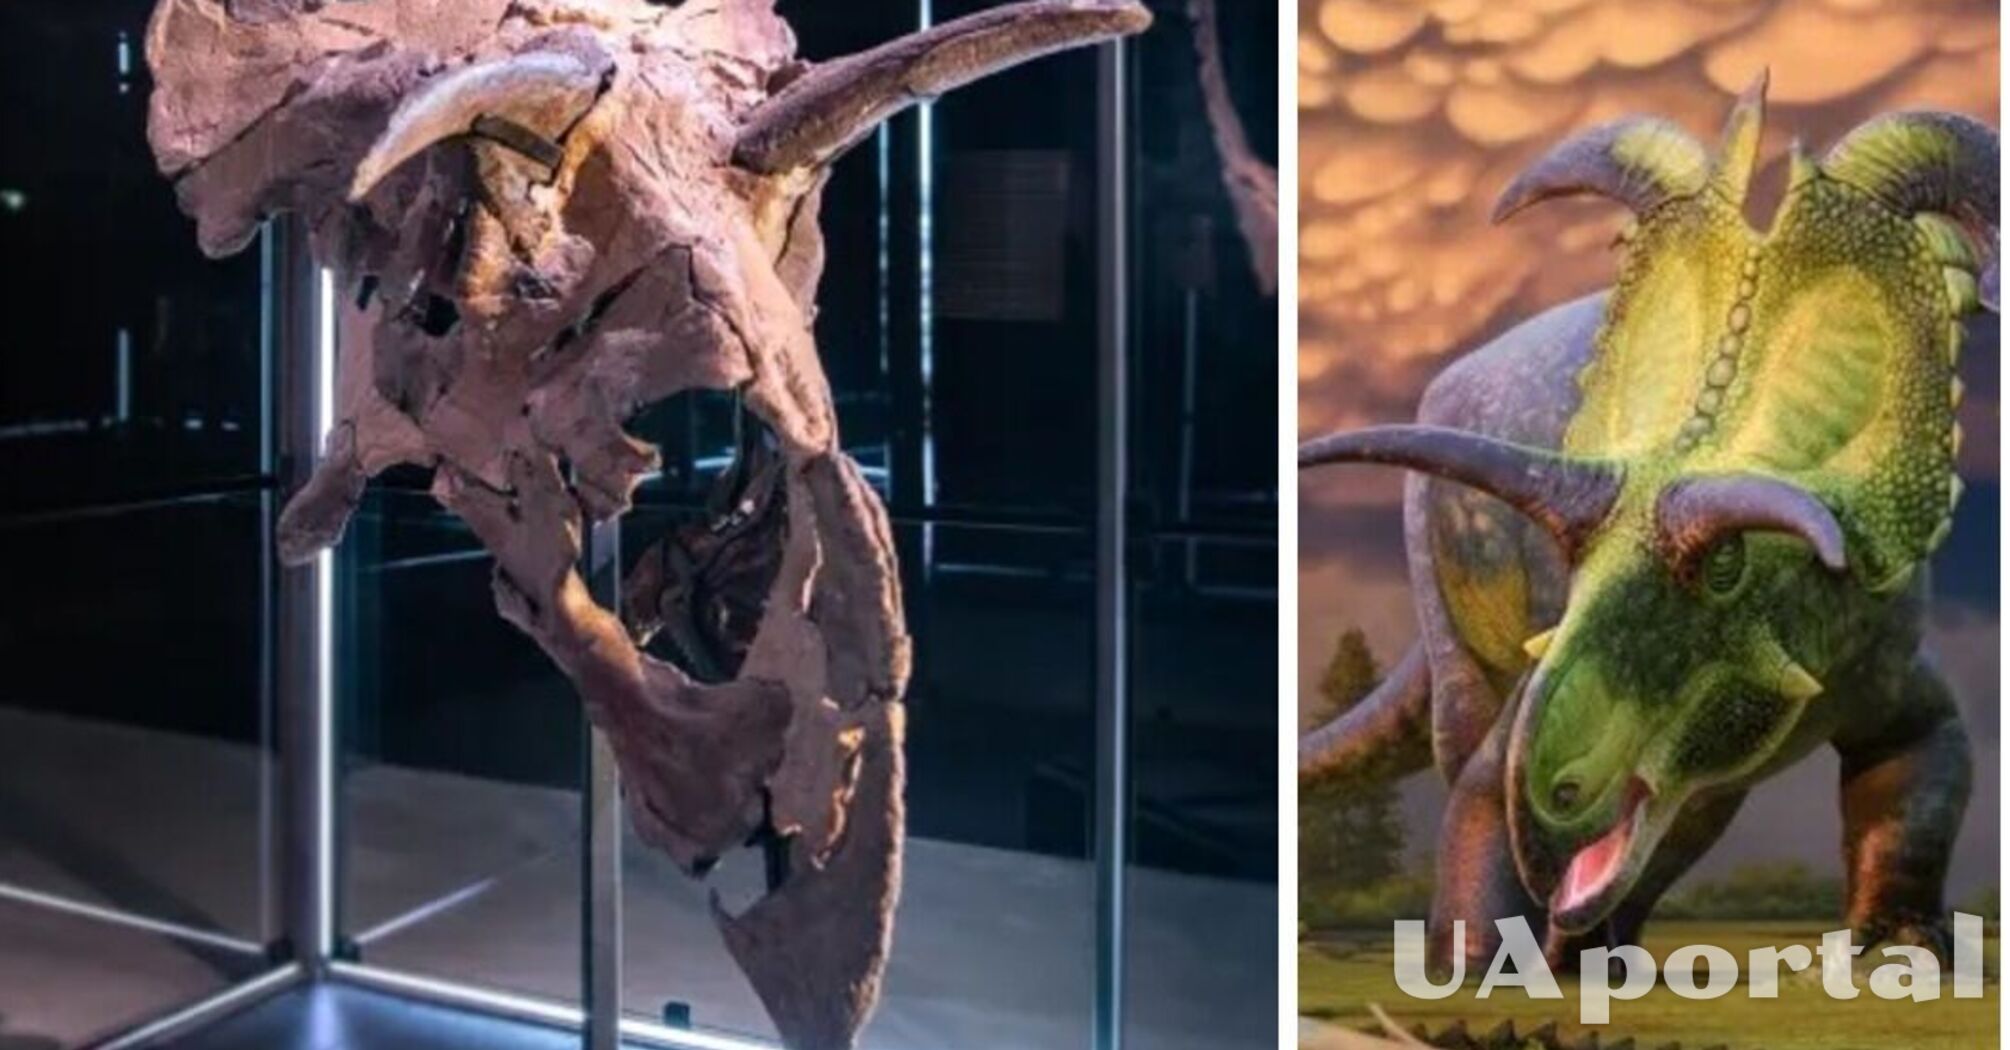 Имел 200 зубов и весил 5 тонн: найден новый вид гигантского динозавра Lokiceratops rangiformis (фото)